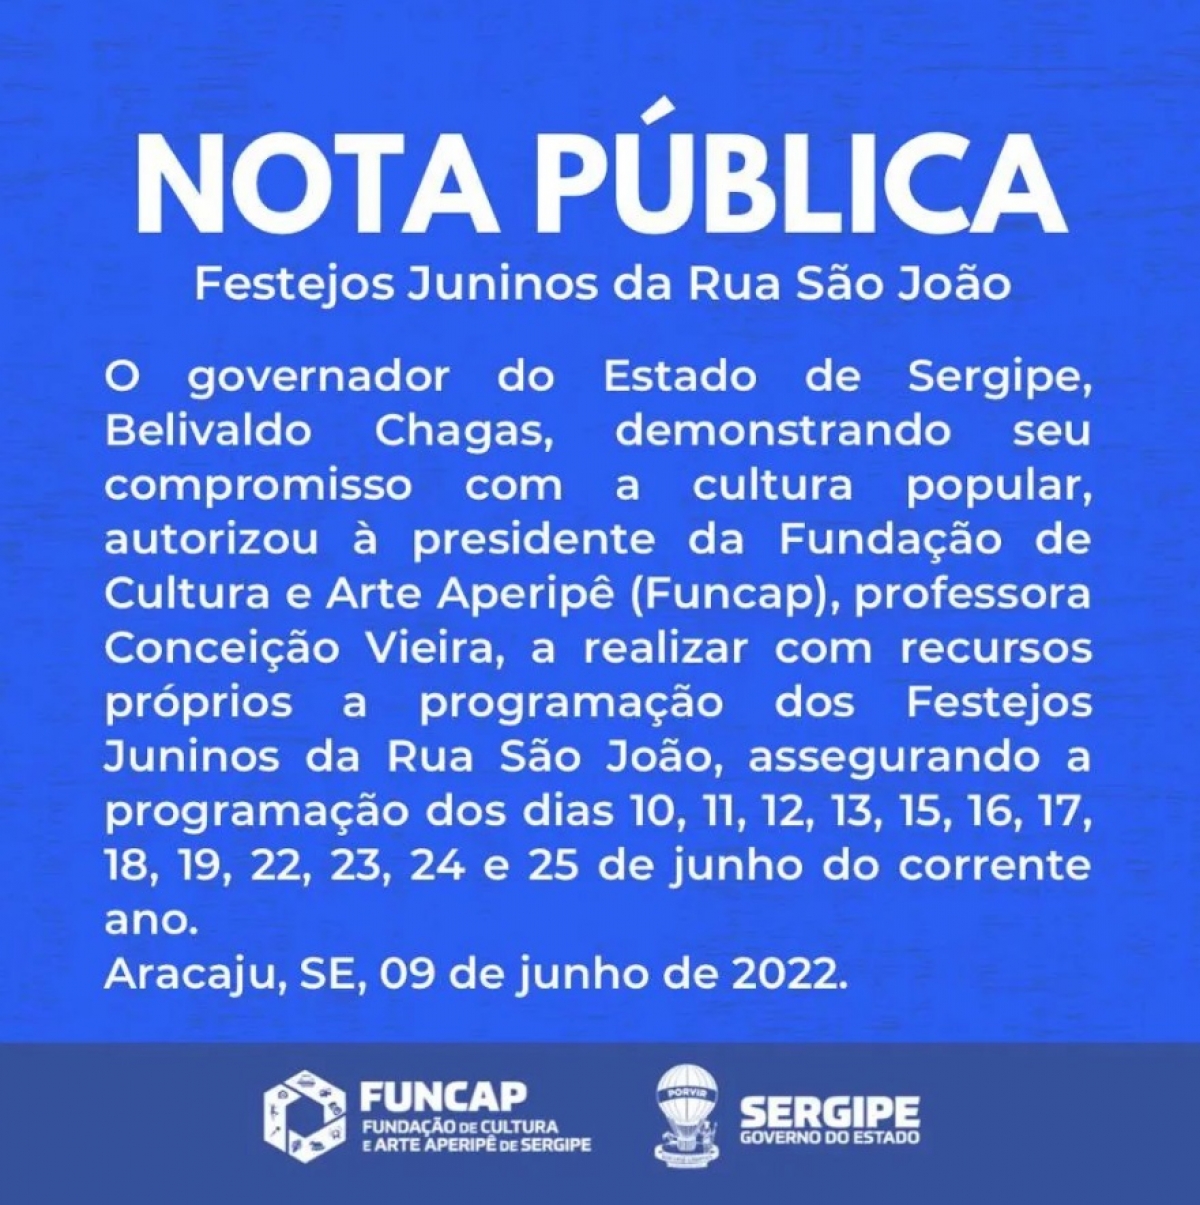 Festejos juninos da Rua São João serão retomados nesta sexta-feira,10/6 - Arte: Funcap